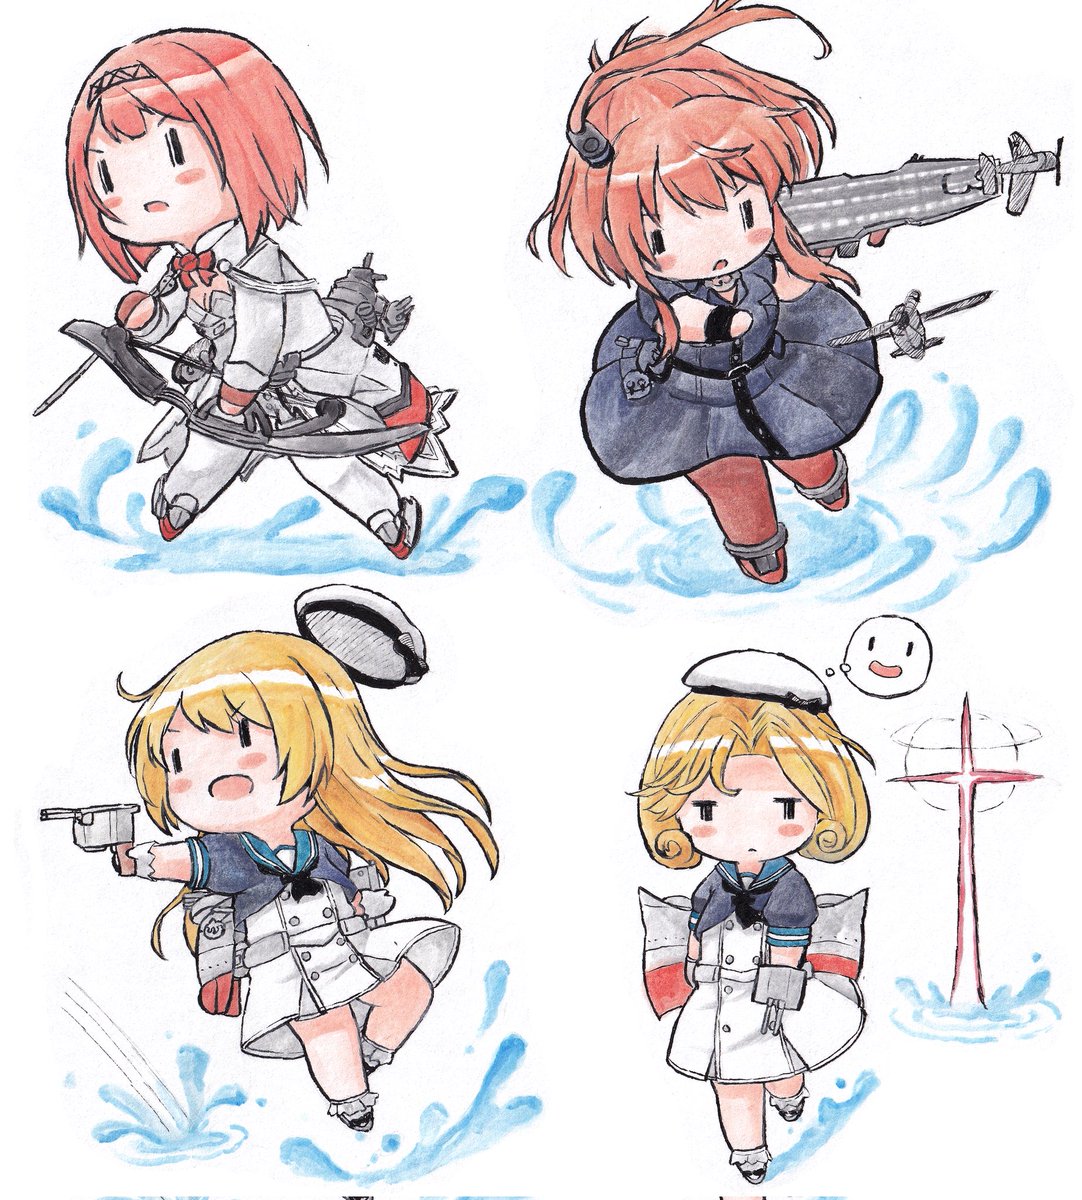 ark royal (kancolle) ,jervis (kancolle) ,saratoga (kancolle) dress multiple girls blonde hair hat sailor dress weapon 4girls  illustration images